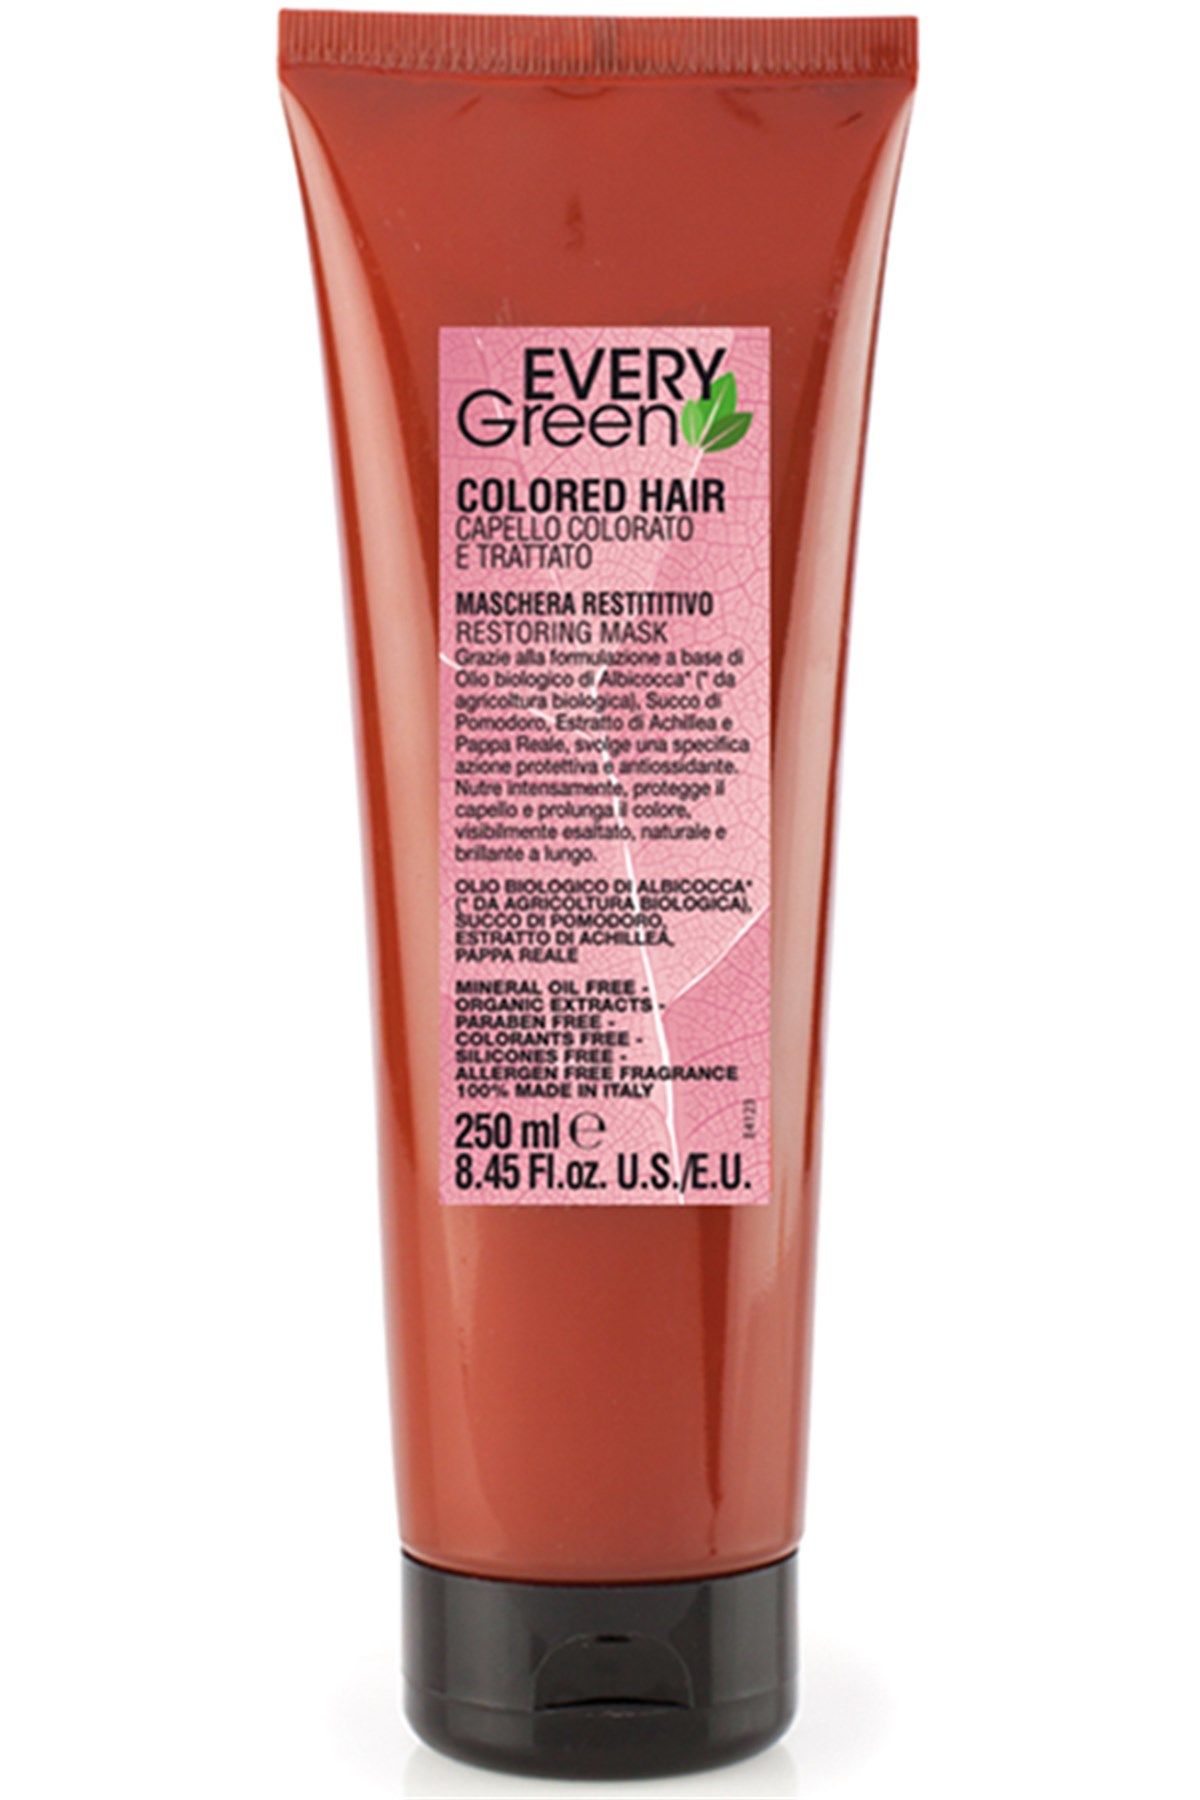 EveryGreen Colored Hair Restoring Mask - Boyalı Saçlara Özel Bakım Maskesi 250 Ml.